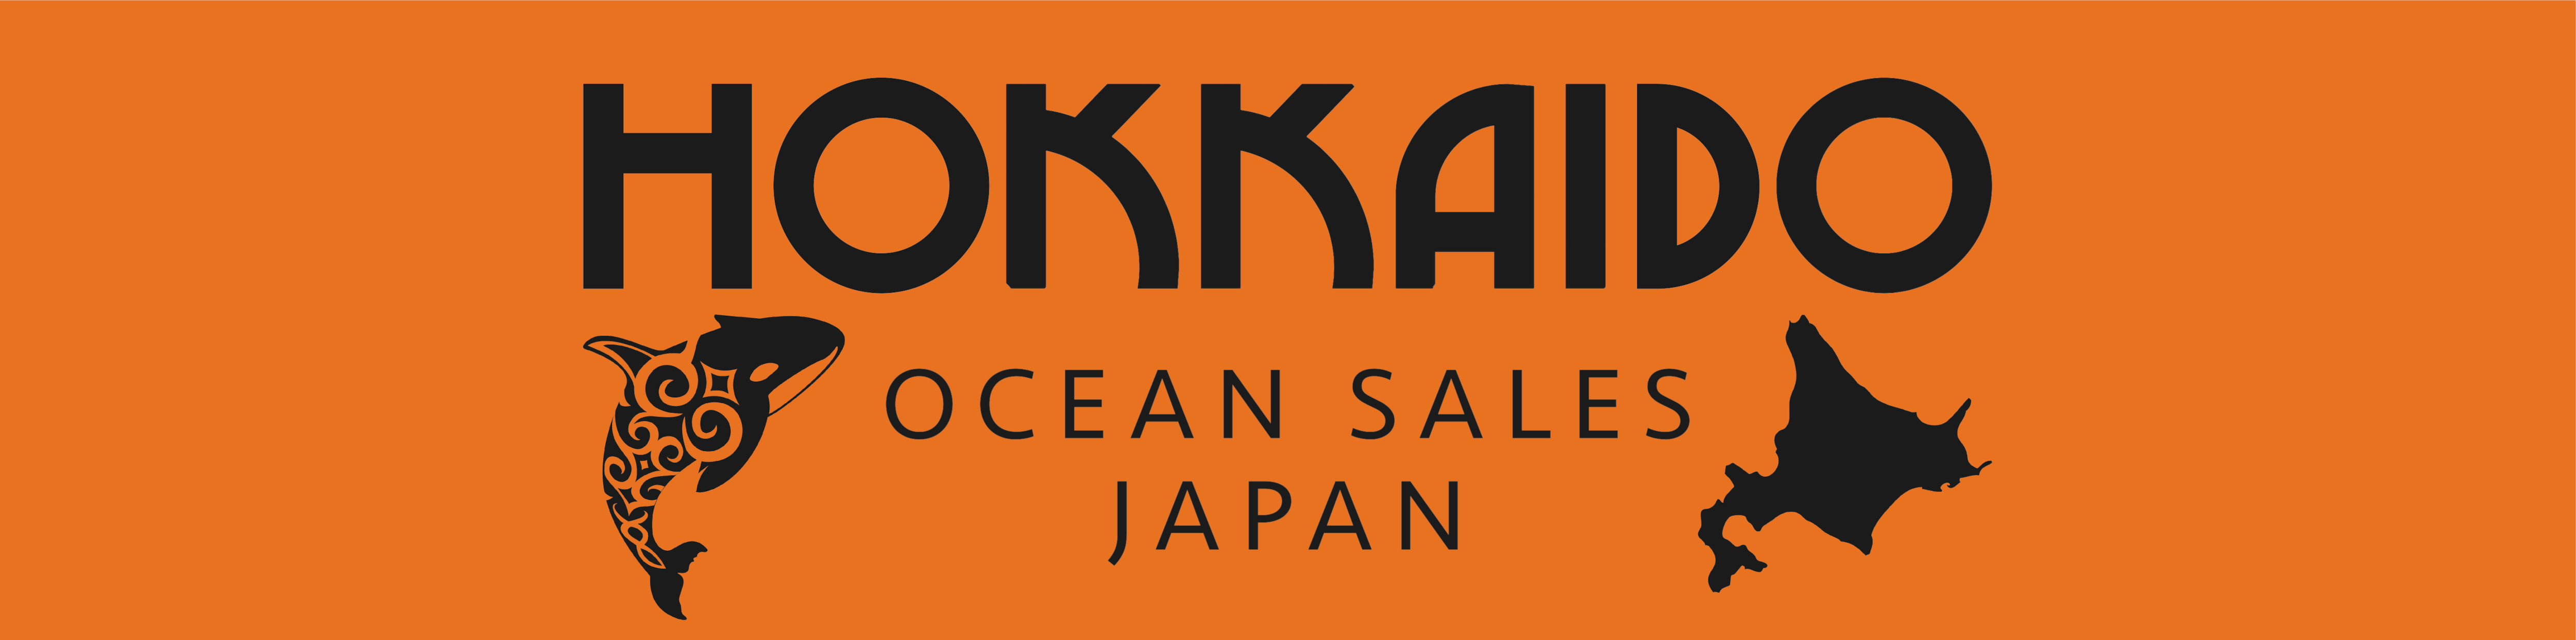 Hokkaido Ocean Sales